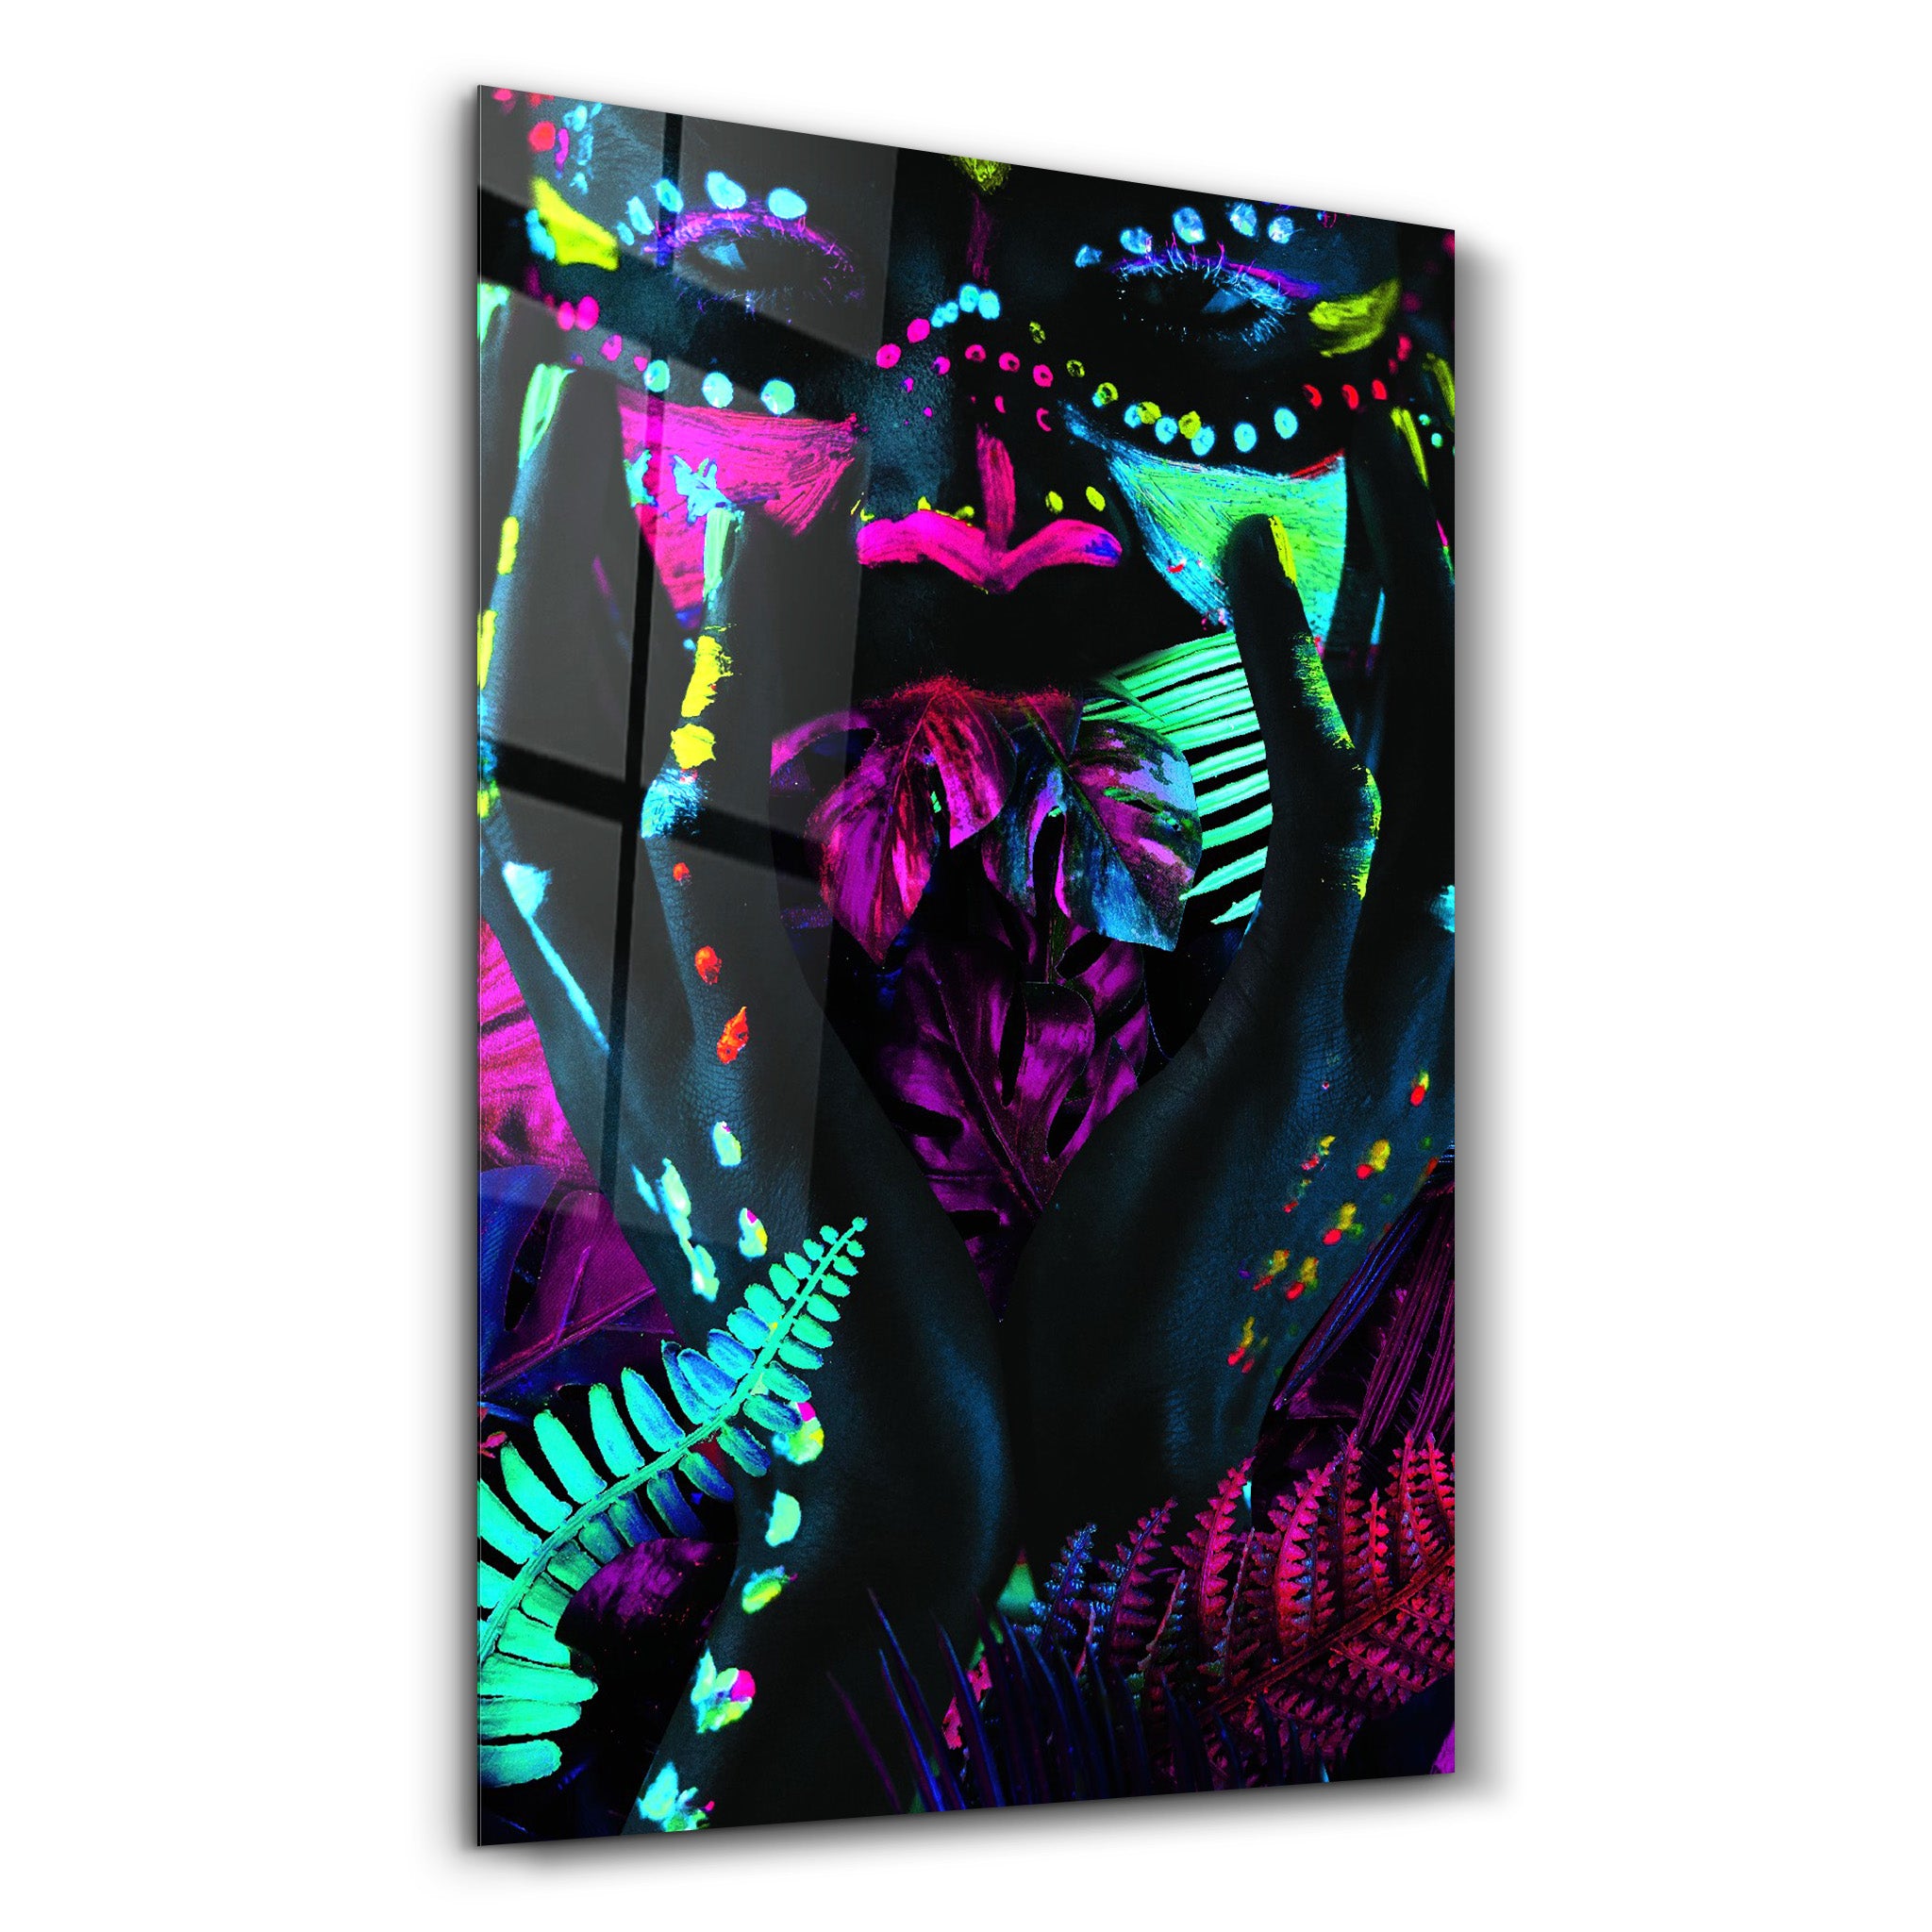 ・"Neon Face"・GLASS WALL ART - ArtDesigna Glass Printing Wall Art